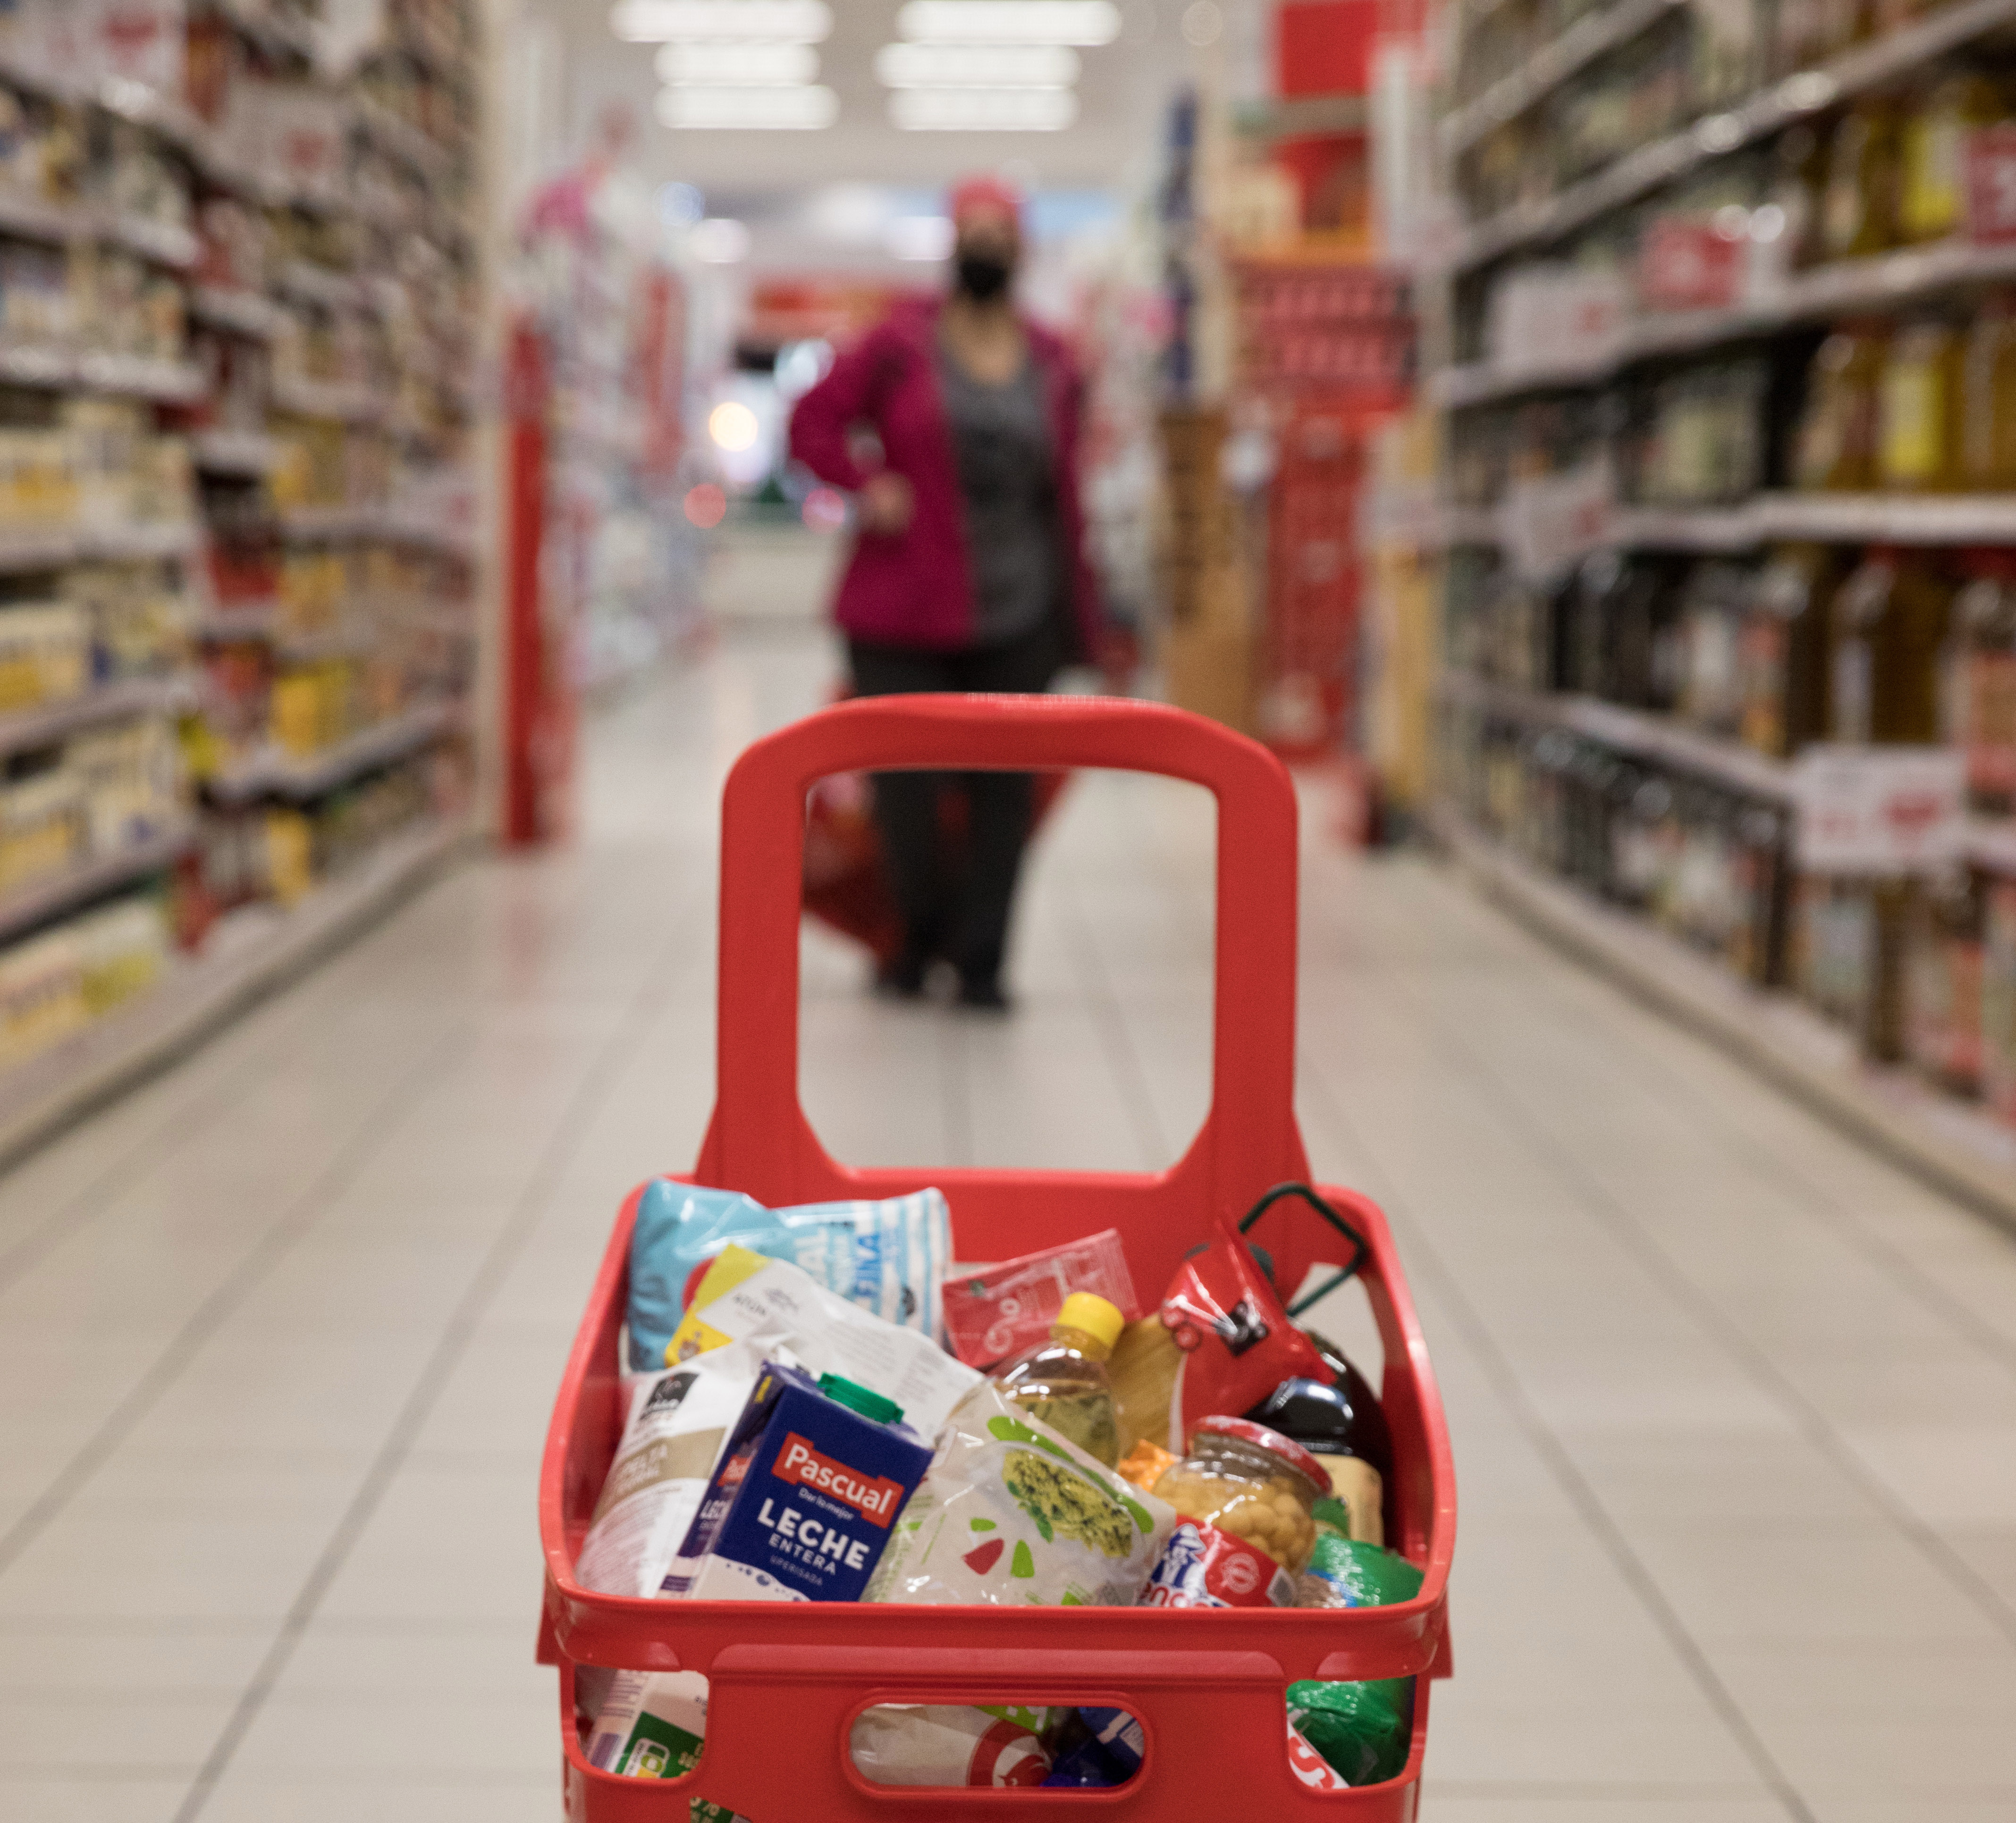 La vuelta a la normalidad de los supermercados: estanterías casi llenas pero productos más caros